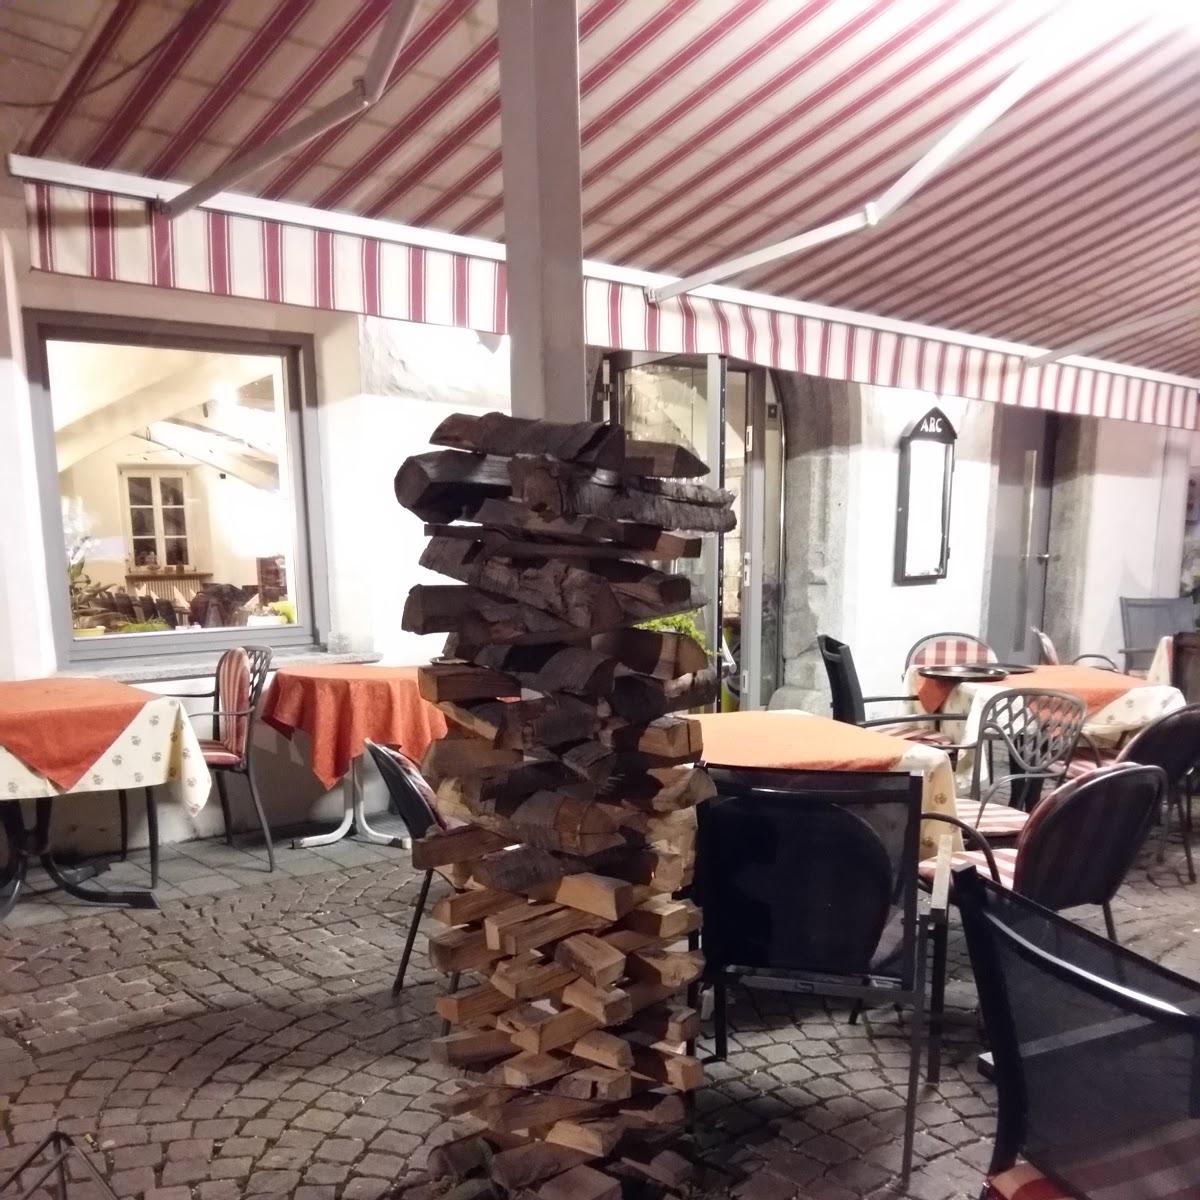 Restaurant "Pizzeria Arc - Restaurant Hotel Krone" in Bruneck